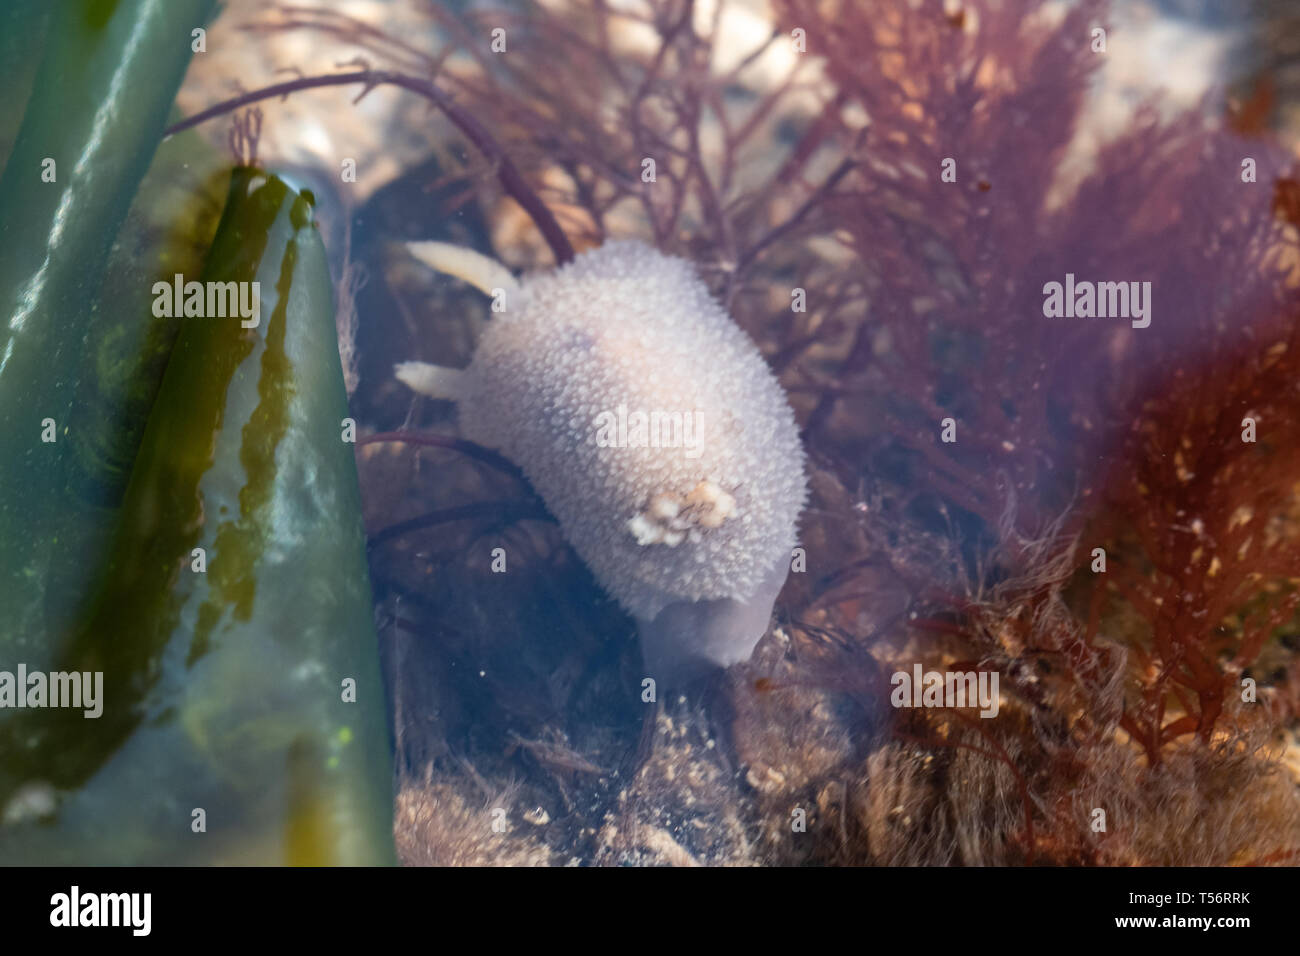 Une limace de mer blanche (Acanthodoris pilosa) dans les eaux peu profondes d'eau de mer à marée basse, UK Banque D'Images